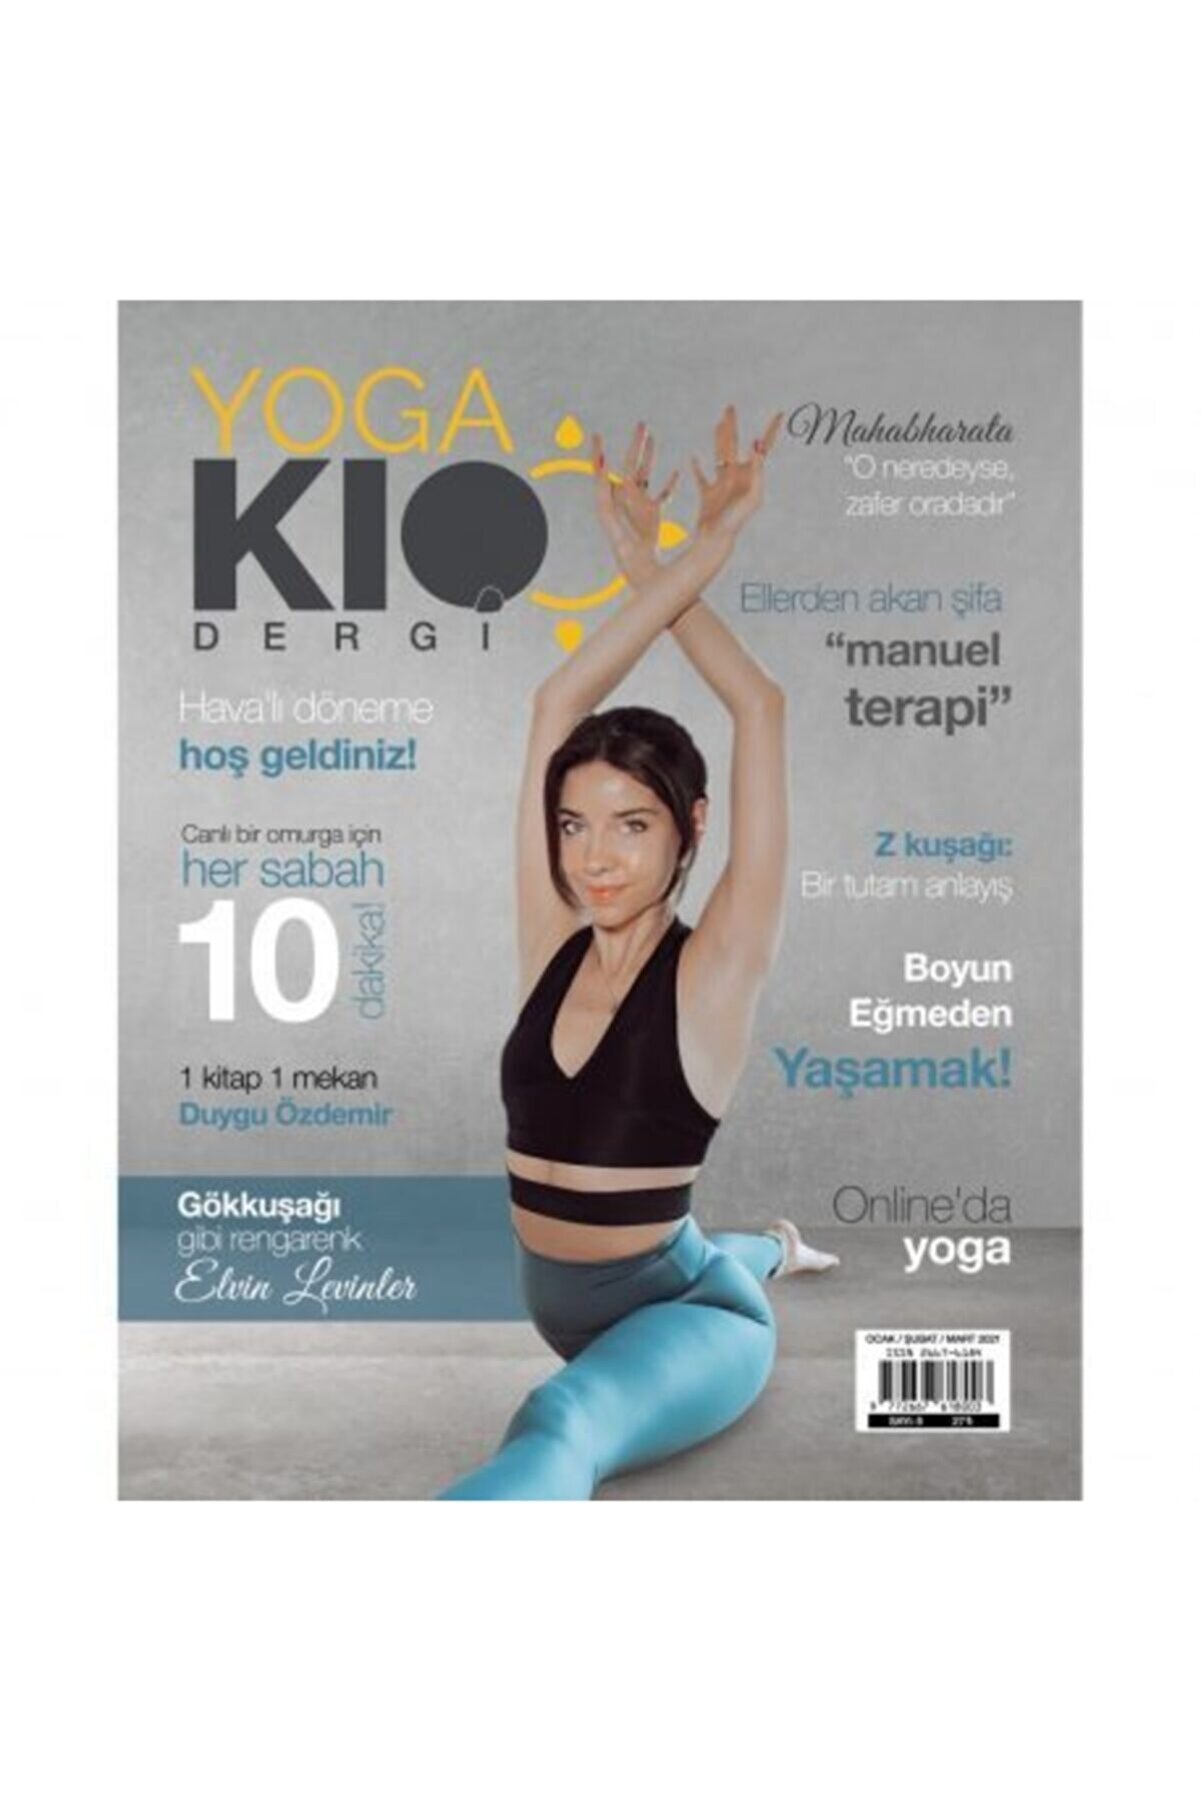 YogaKioo Dergi 8. Sayı